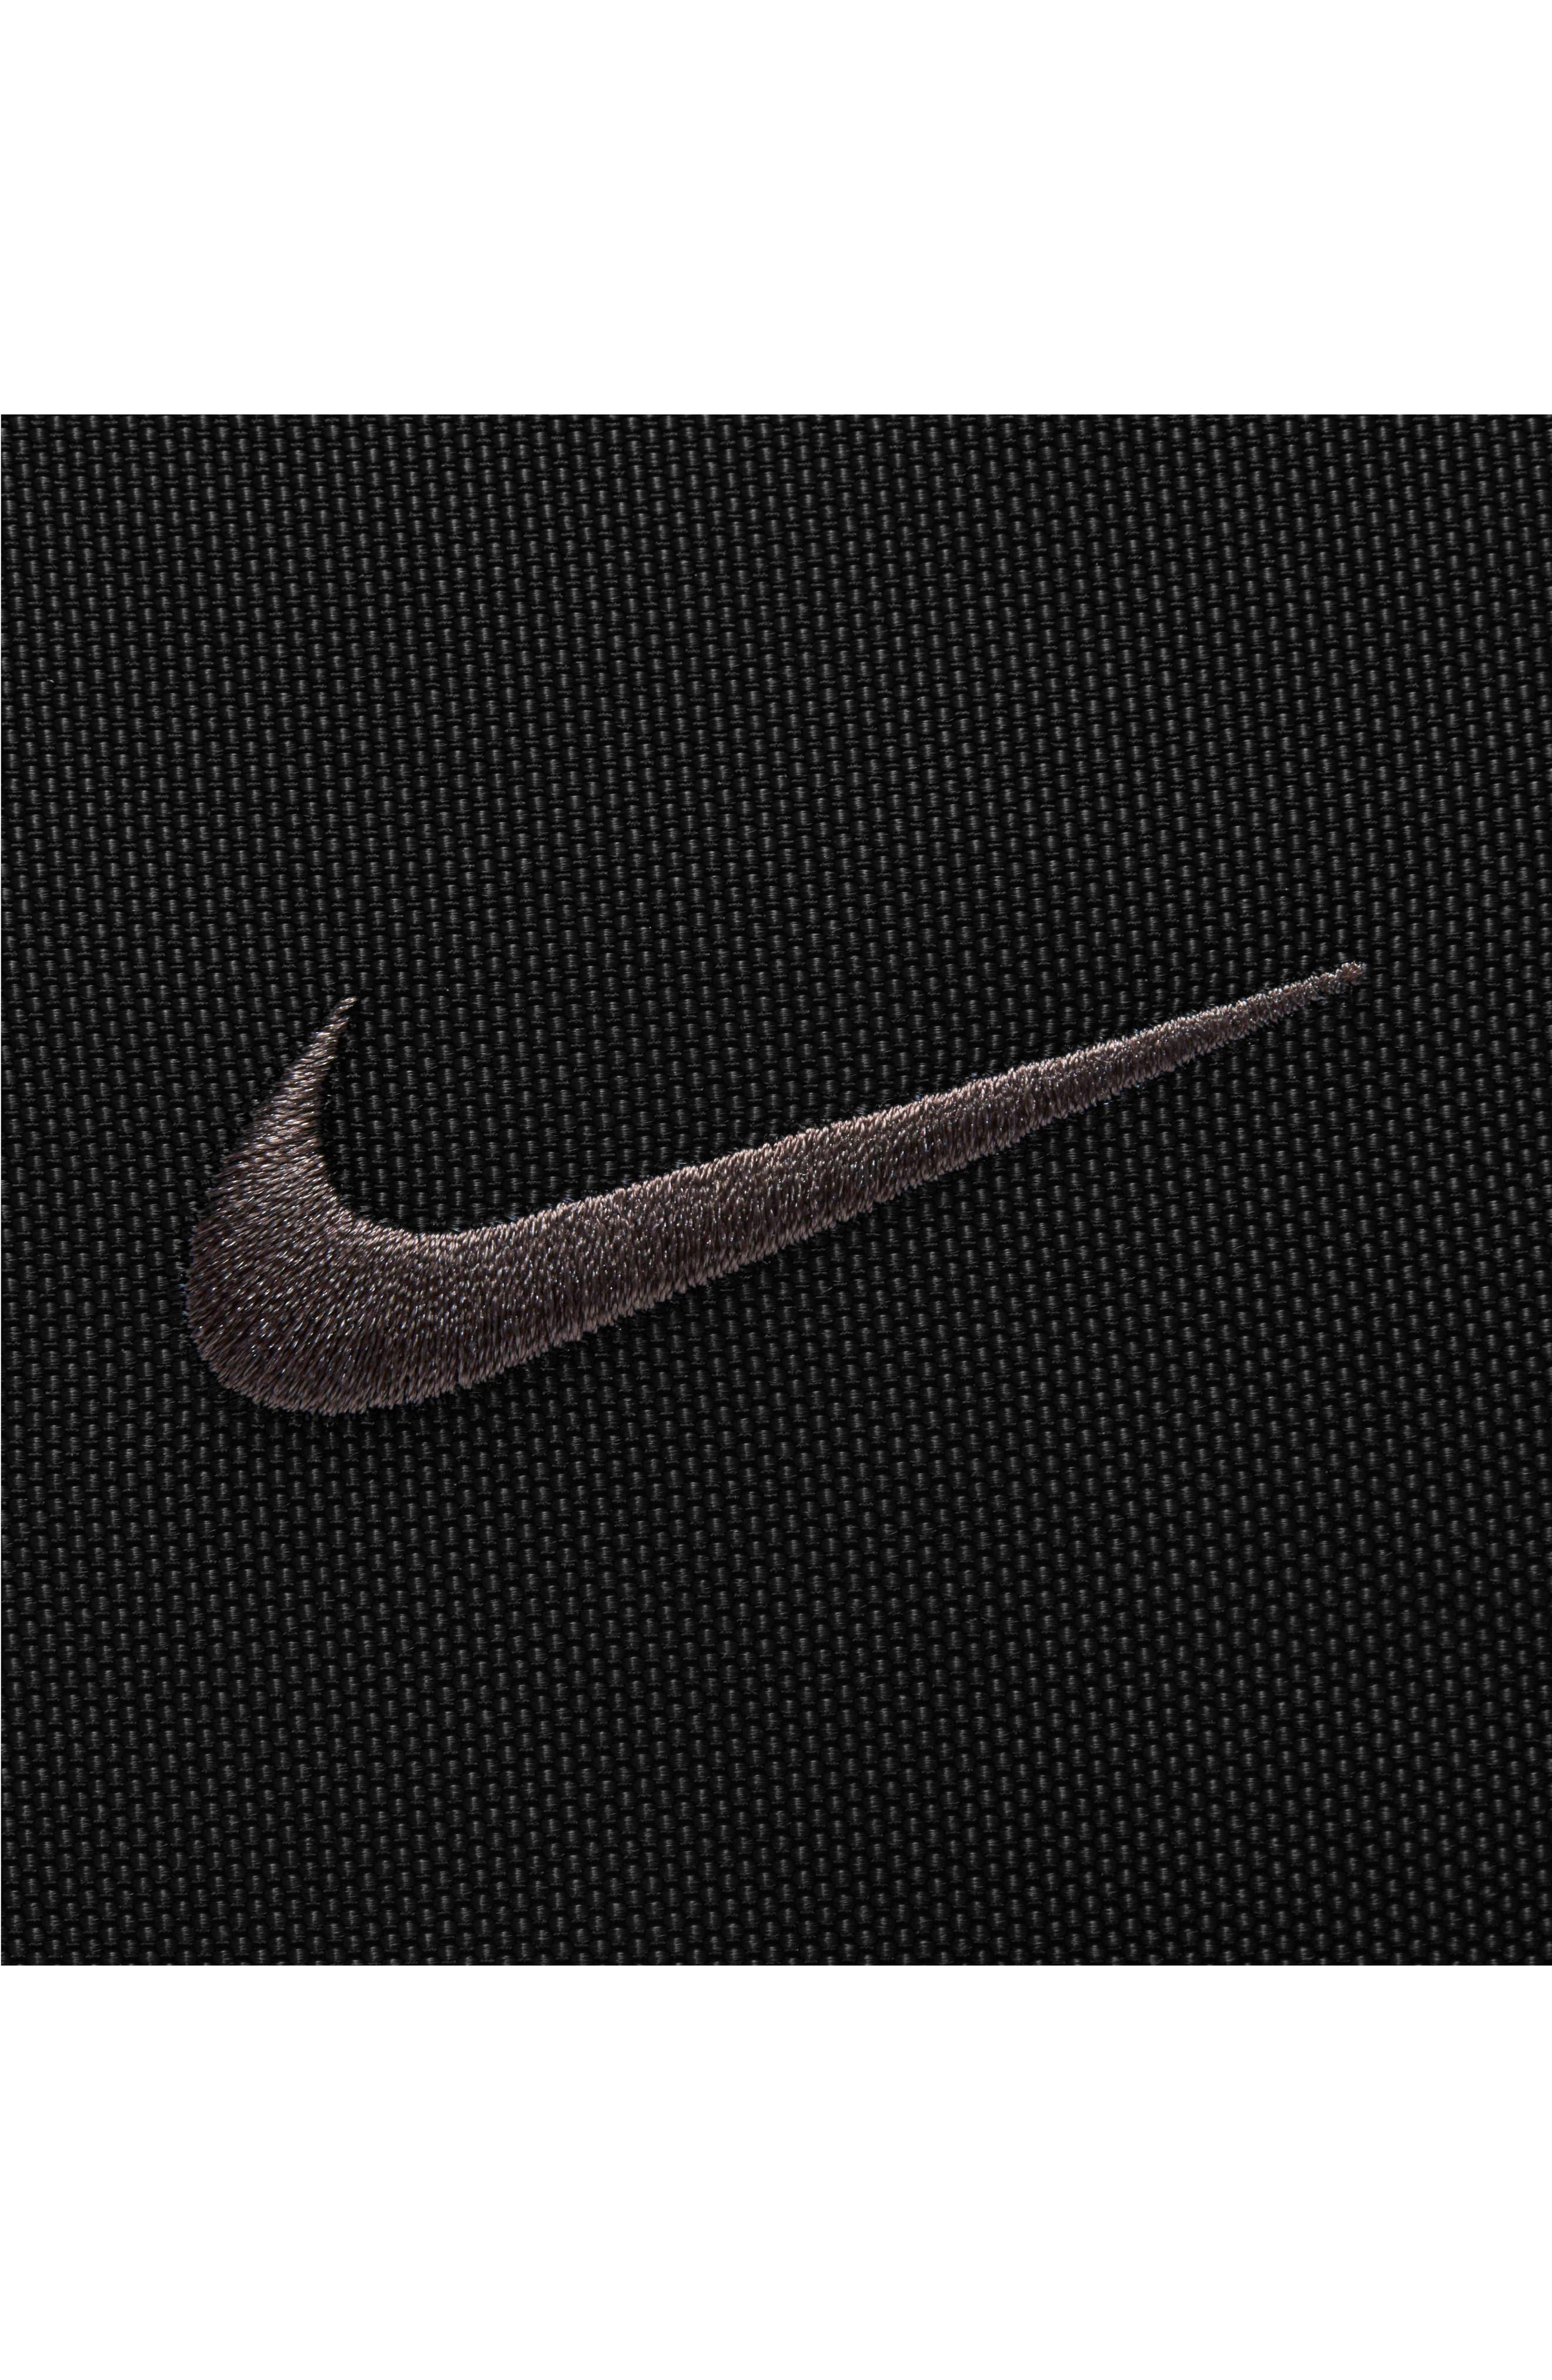 Nike Men's Sportswear Essentials Crossbody Bag Black/Black' : .in:  Fashion